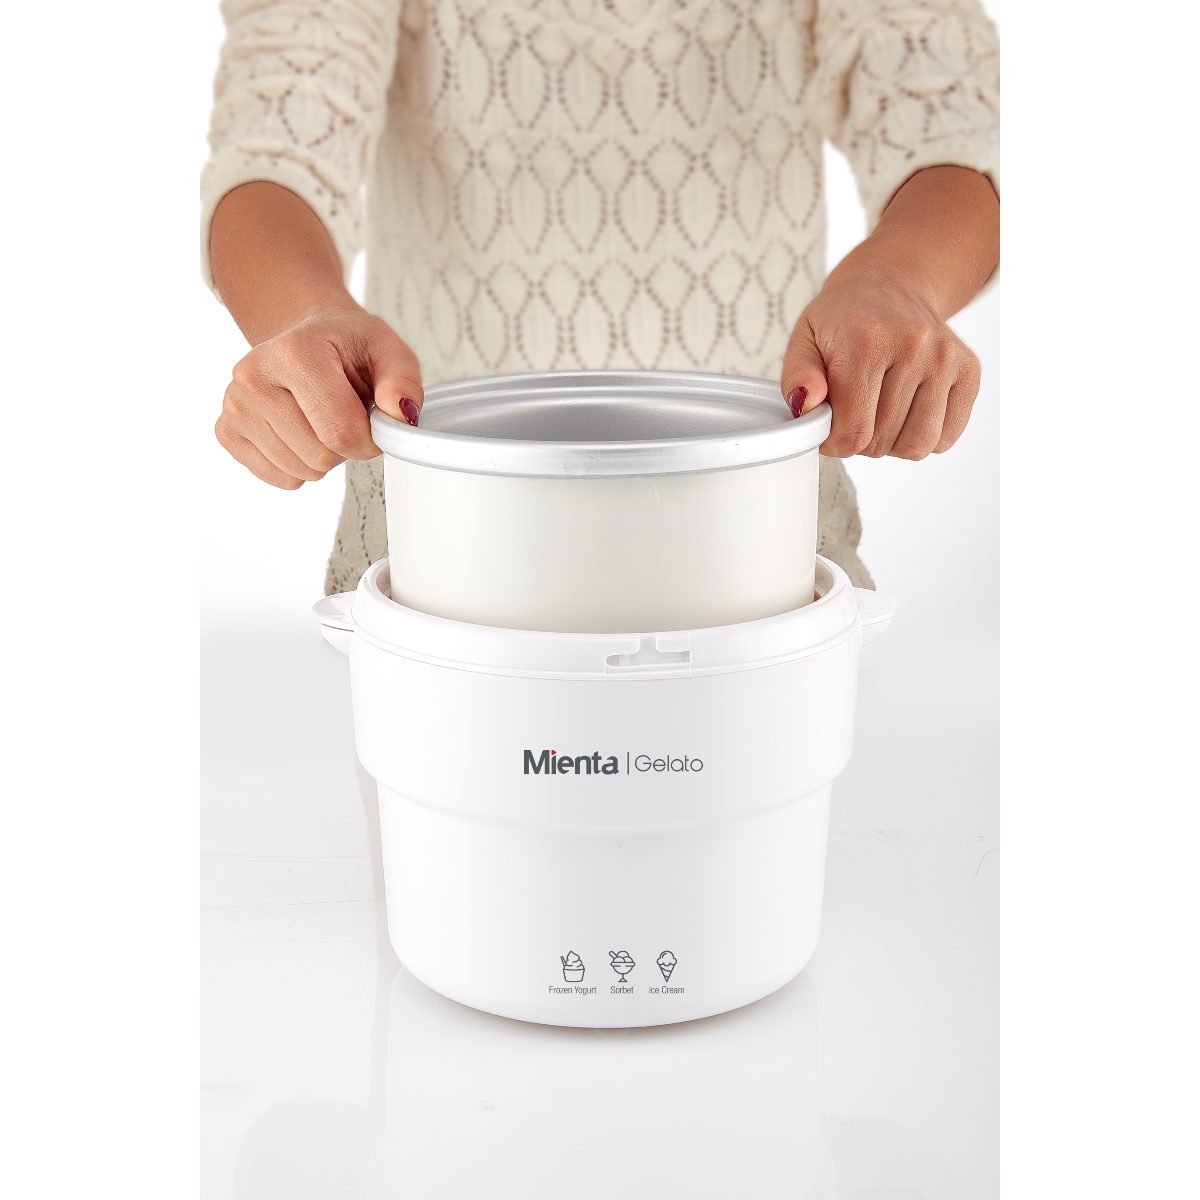 Mienta Gelato Ice Cream Maker, White - IM48133A